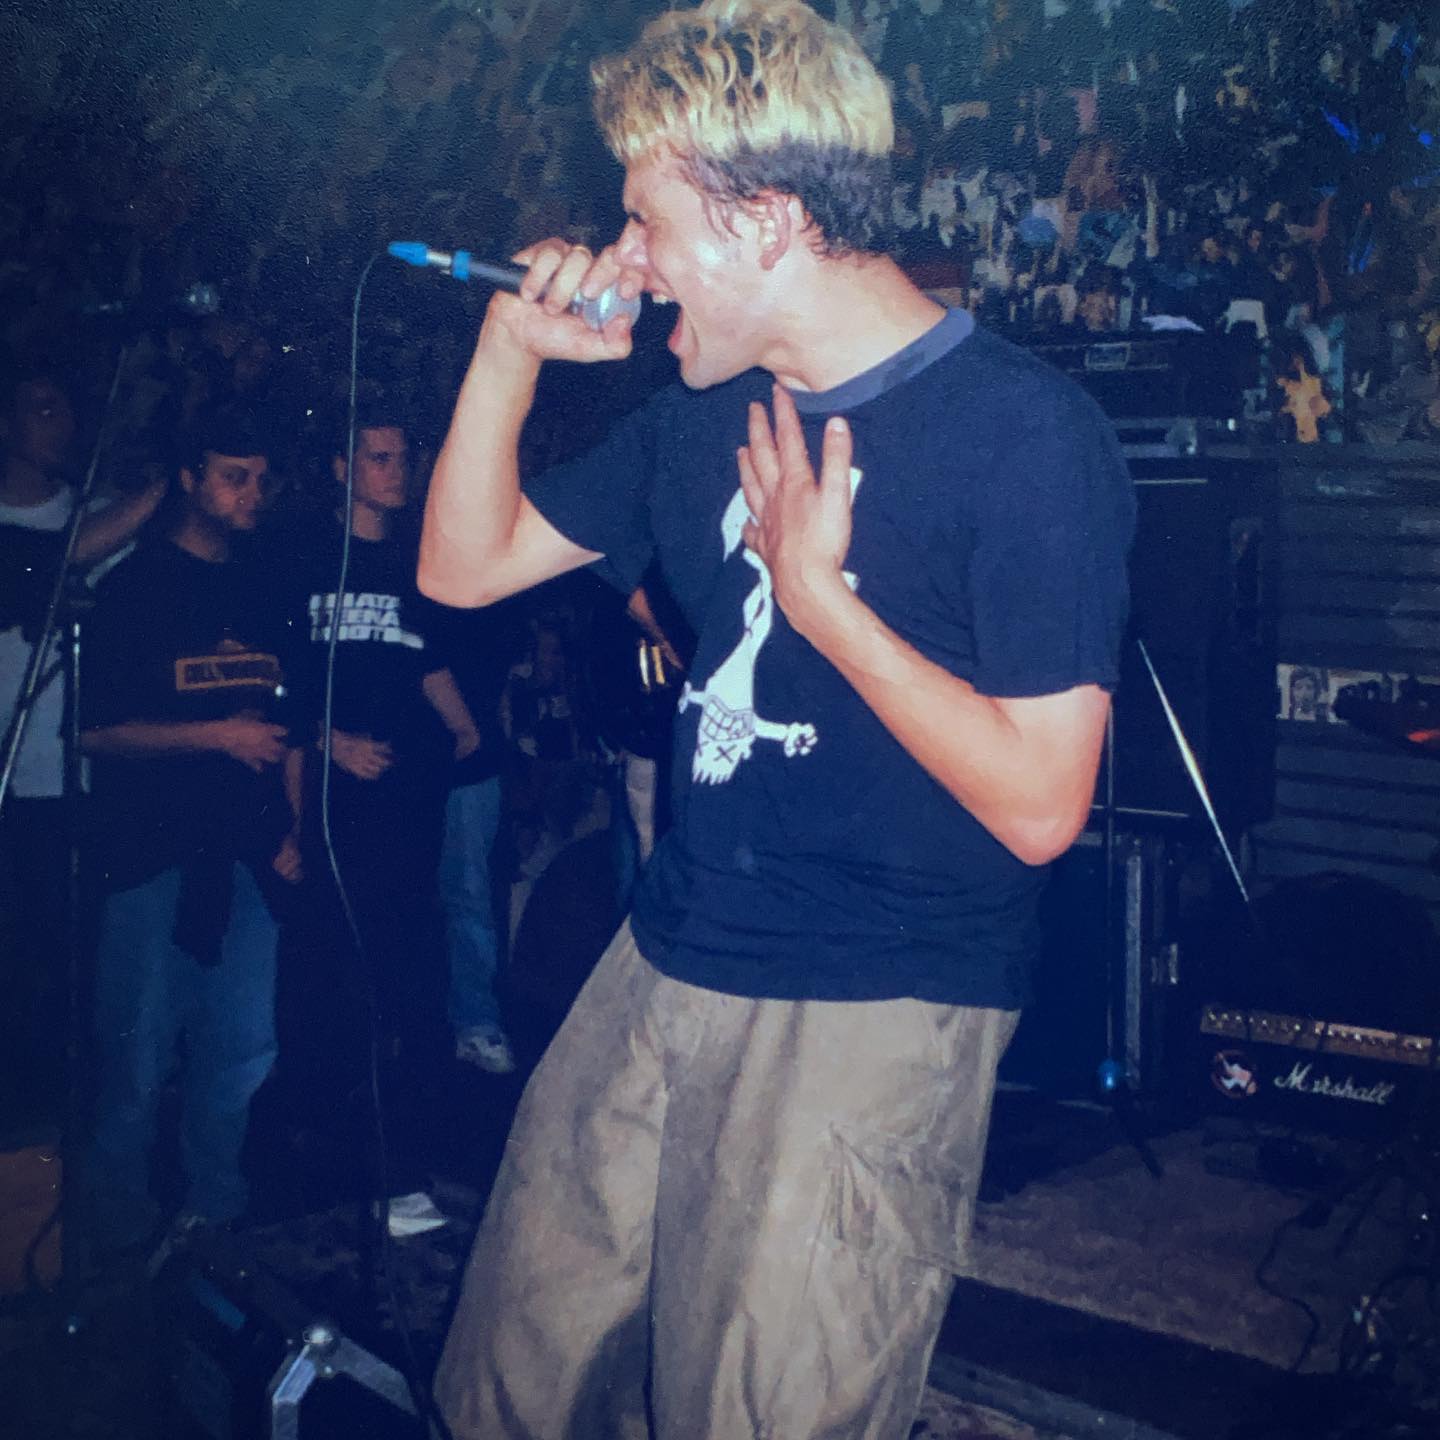 Crivits- Eureka, Zwolle (NL) - 2 October 1998 #straightedge #hardcore #punkrock #gigpic by @twentylandcrew